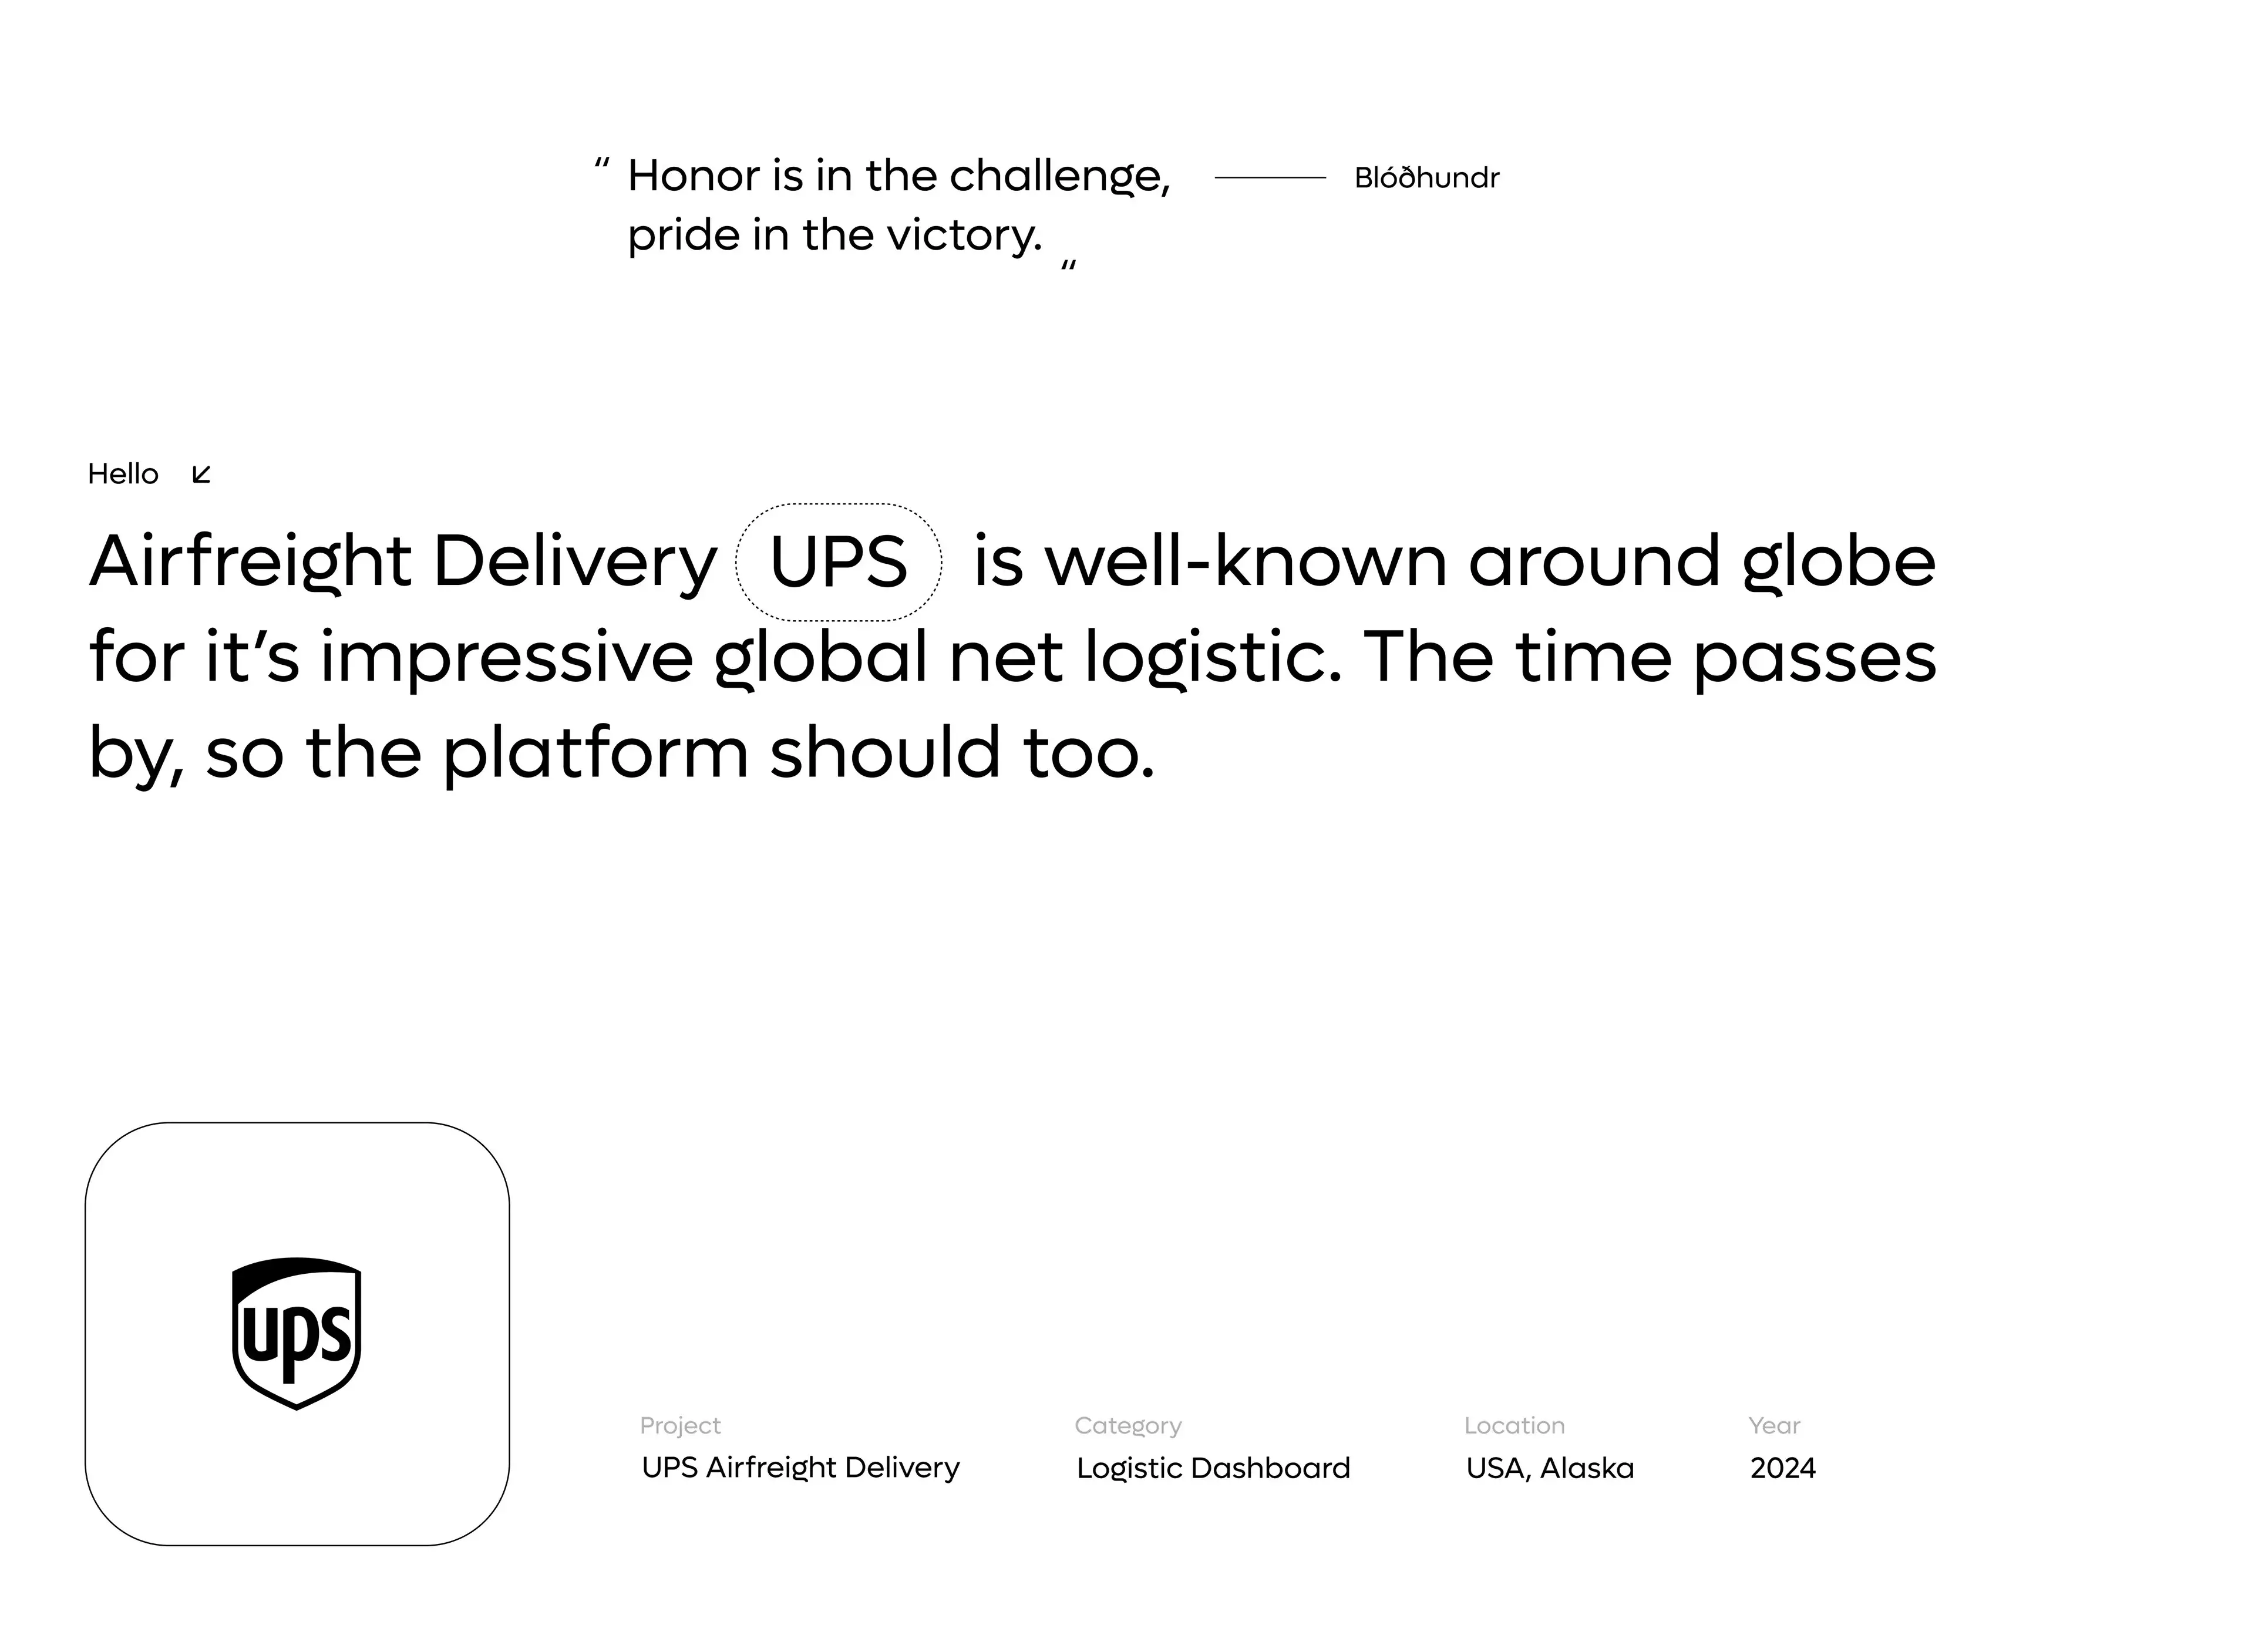 UPS Transport Management System - SaaS & UX UI Design - Management